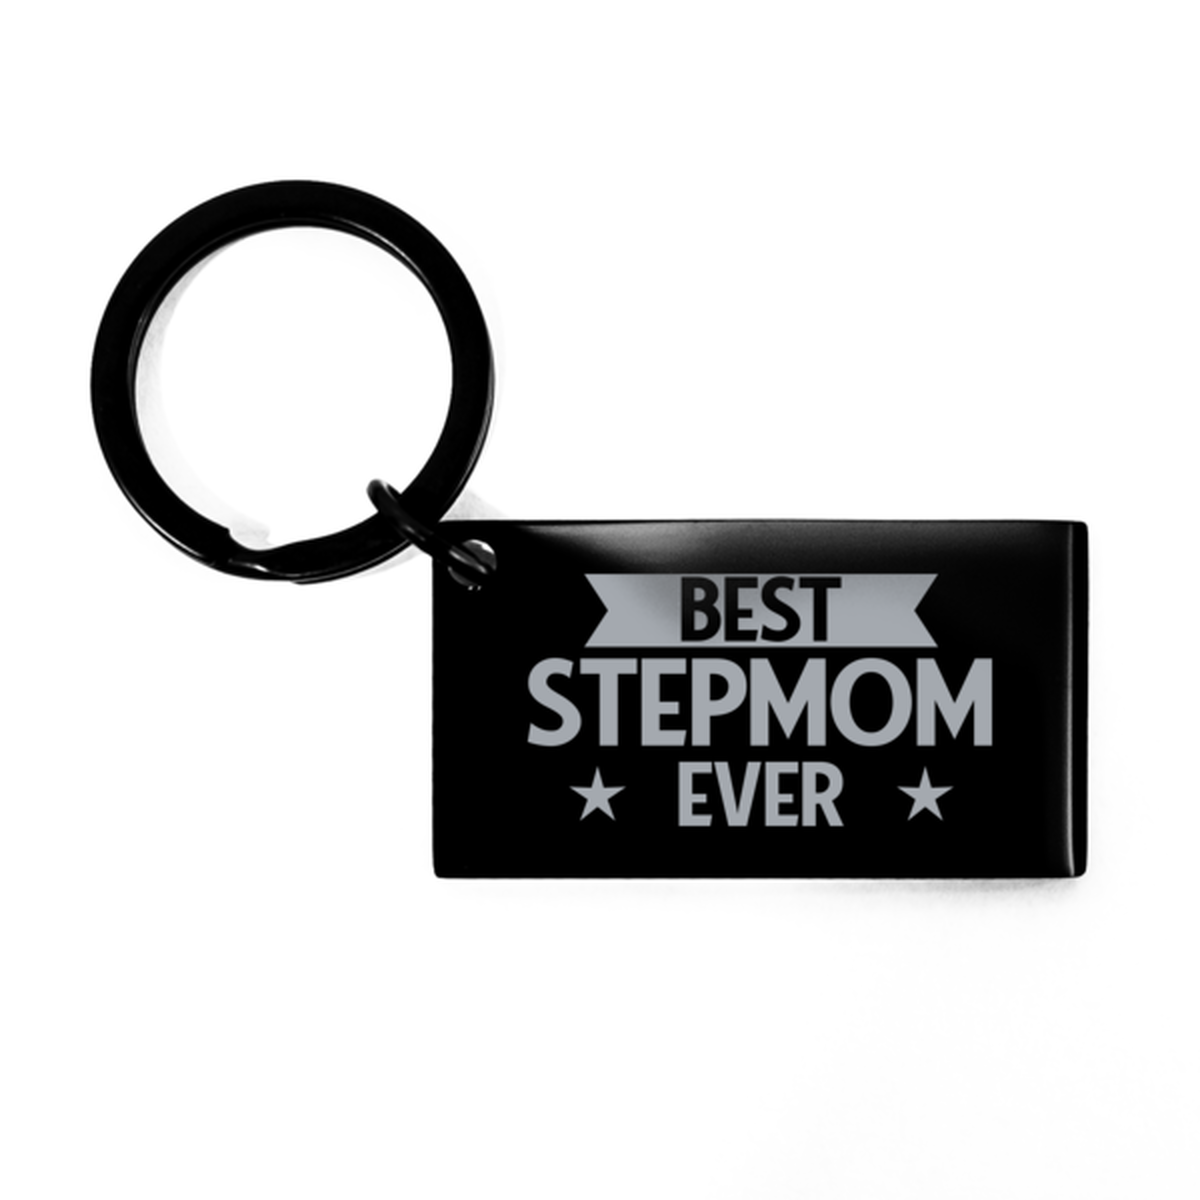 Best Stepmom Ever Stepmom Gifts, Funny Black Keychain For Stepmom, Birthday Engraved Keyring Presents For Women